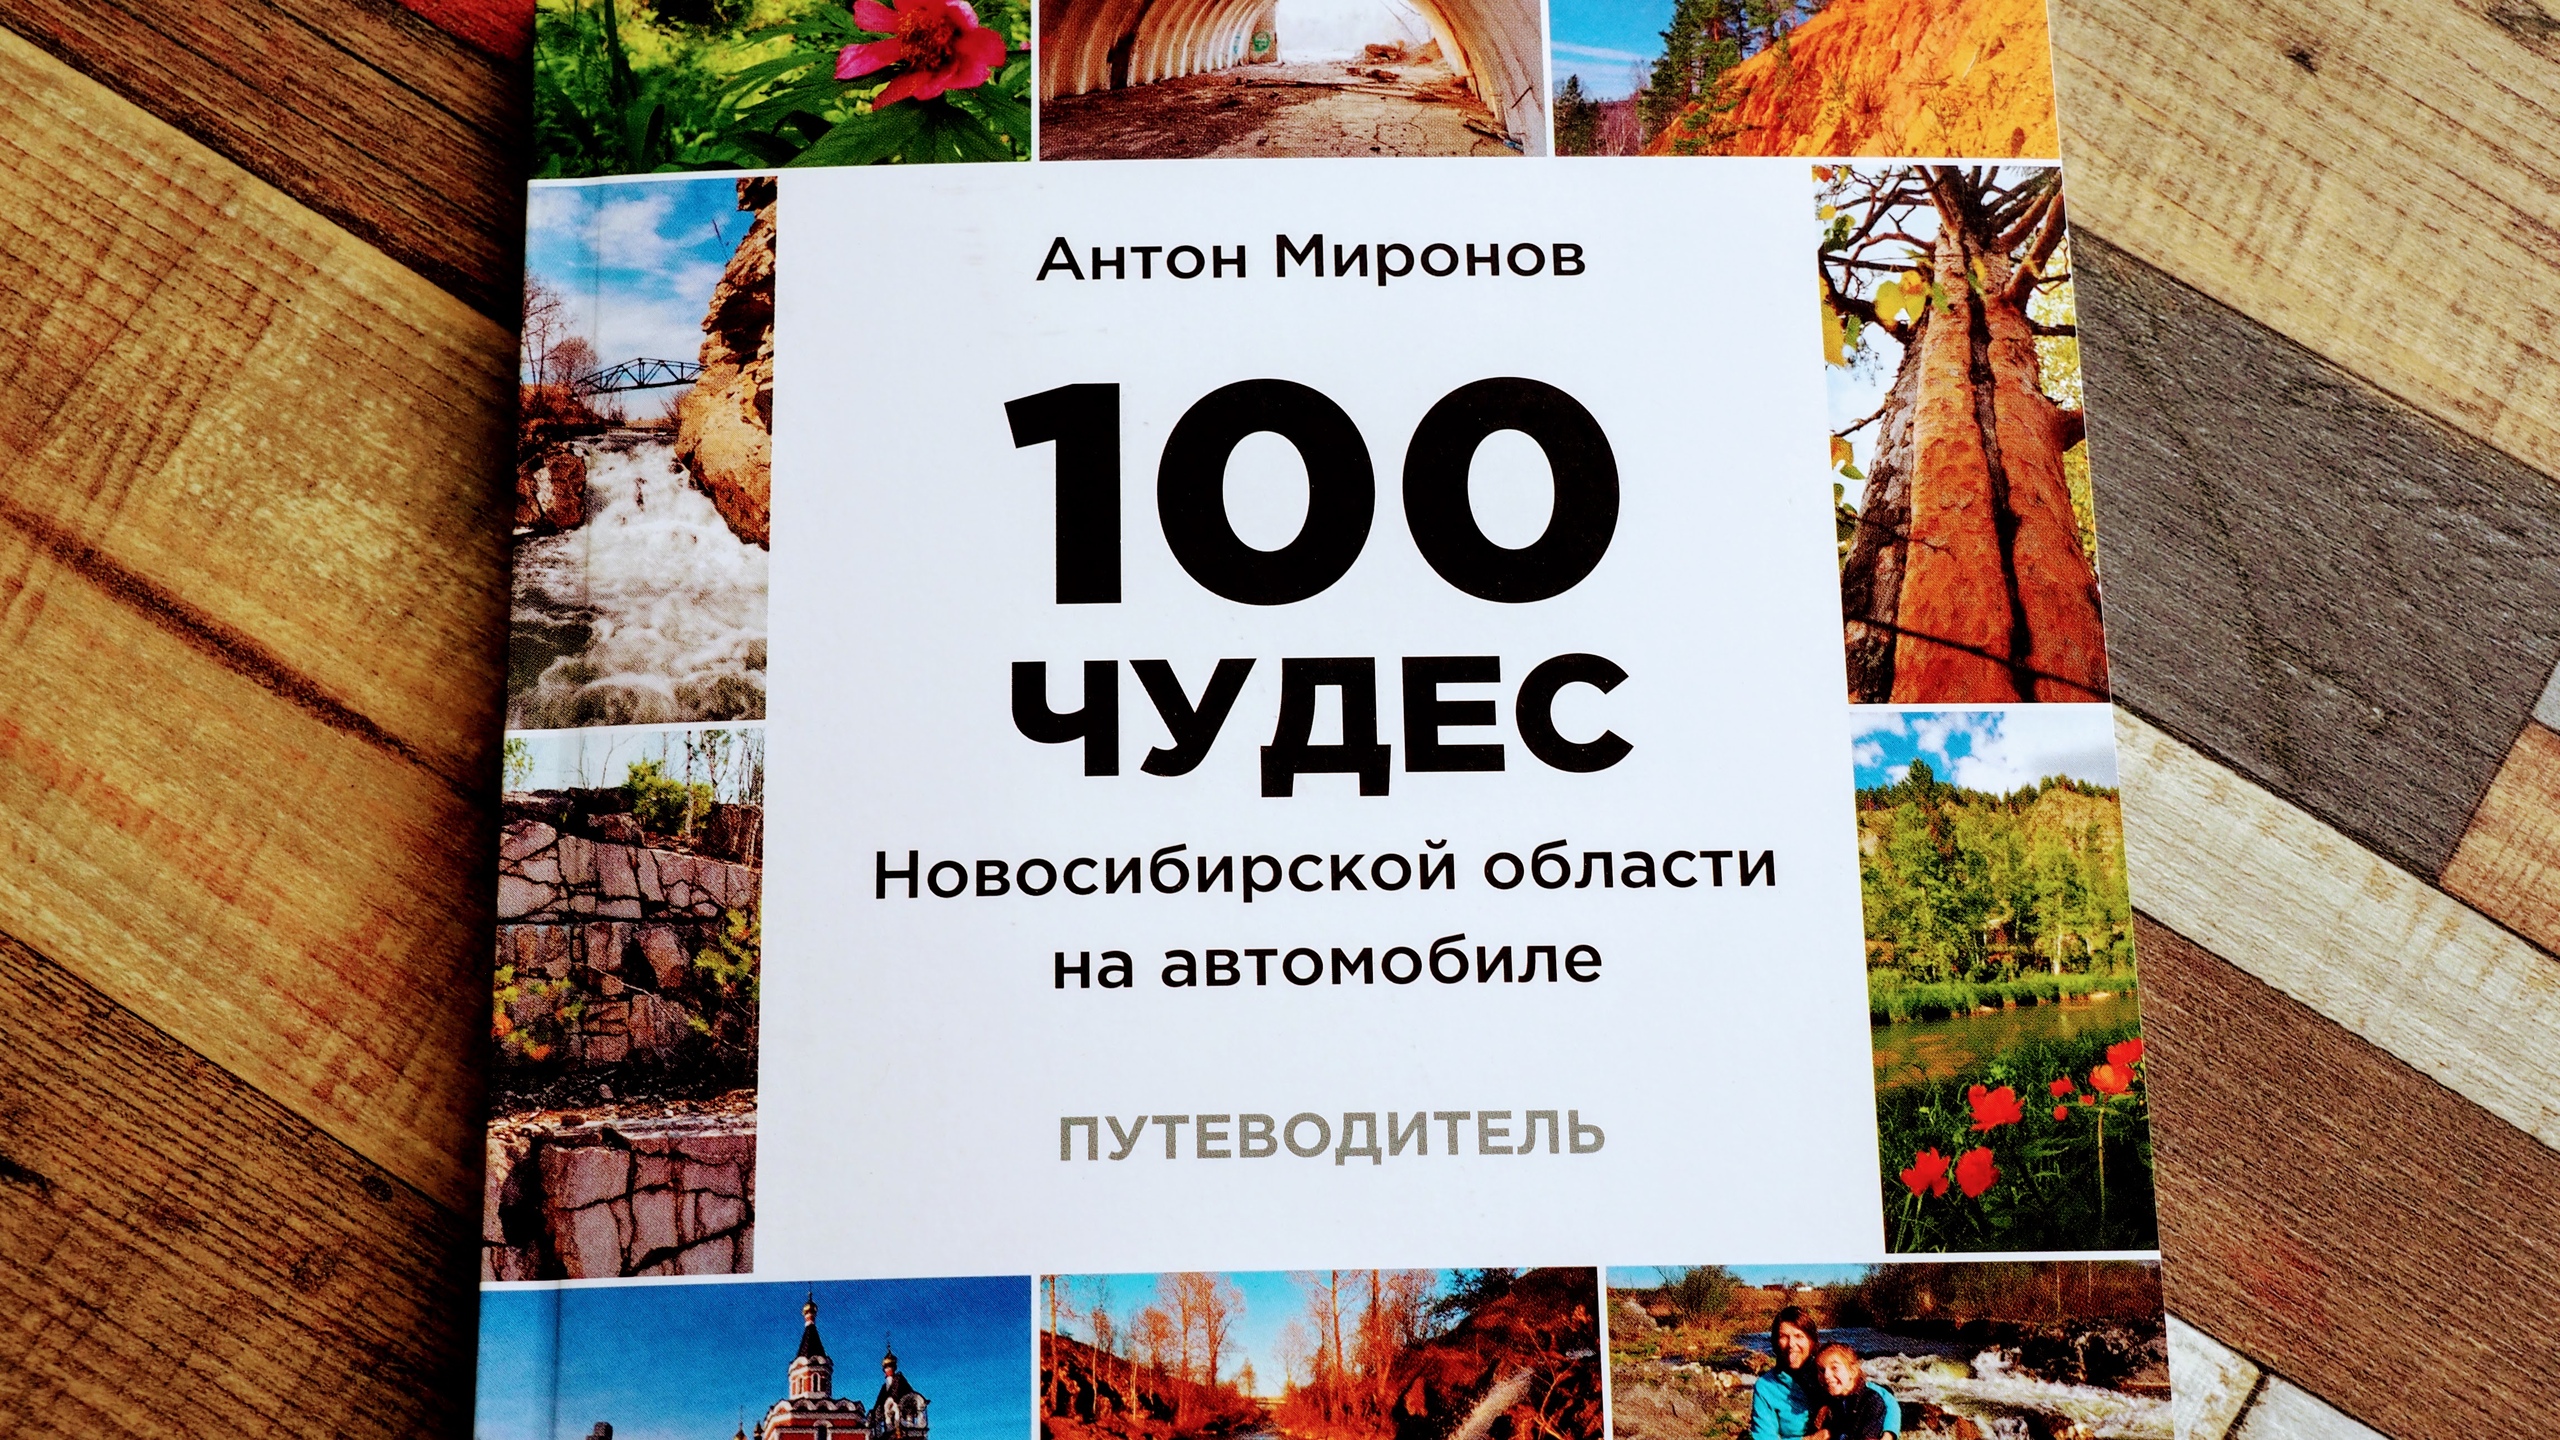 Человек из Кемерова открыл 100 чудес Новосибирской области